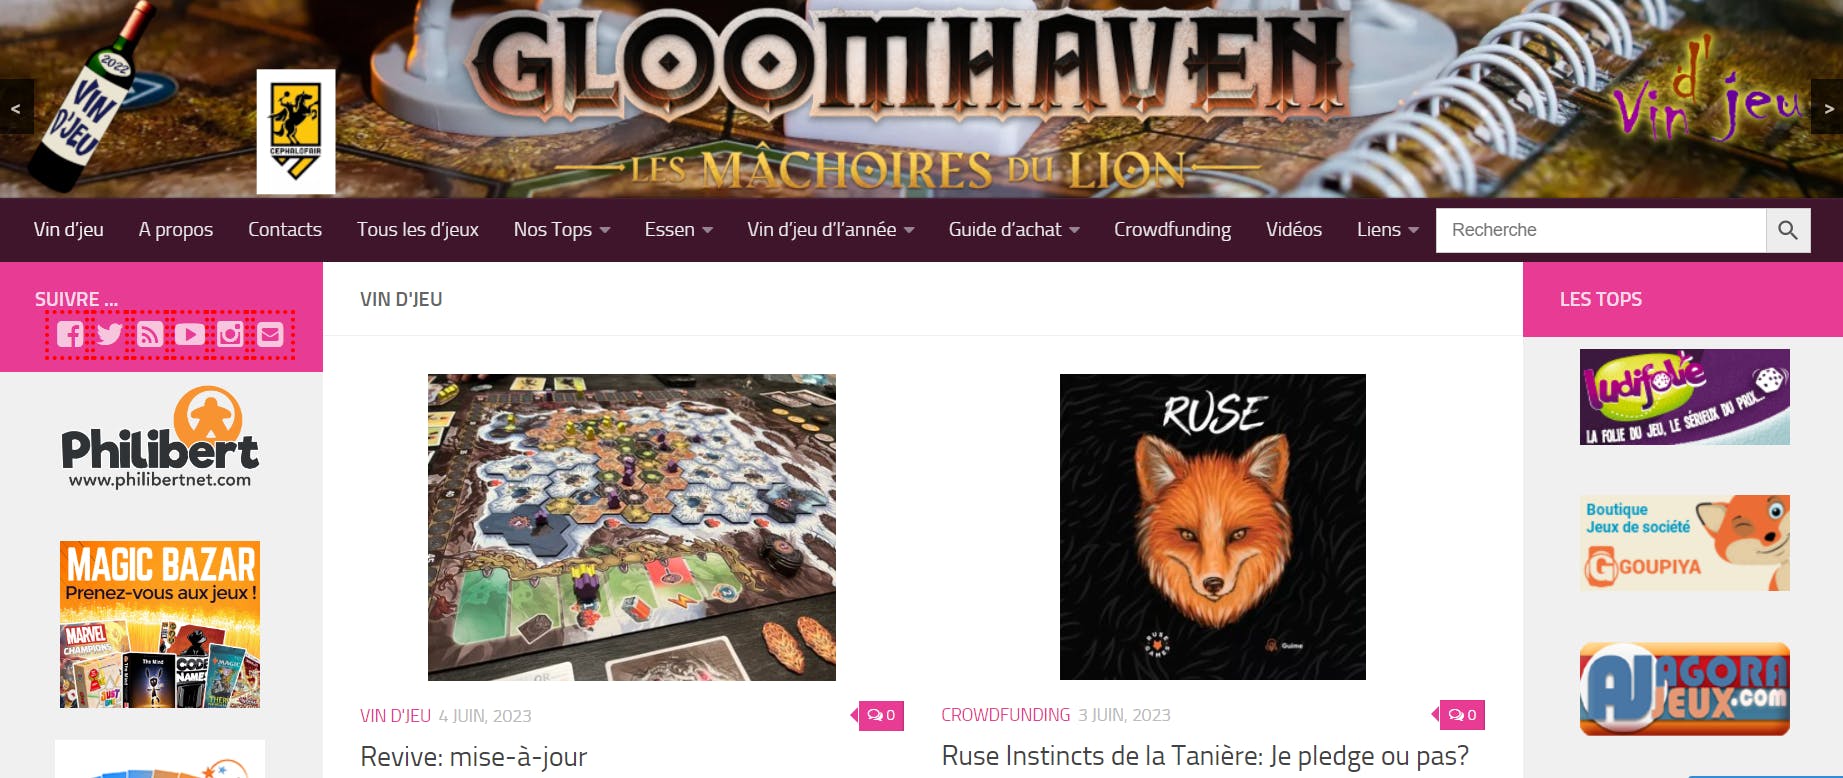 Gloomhaven Les Mâchoires du Lion - Vin d'jeu